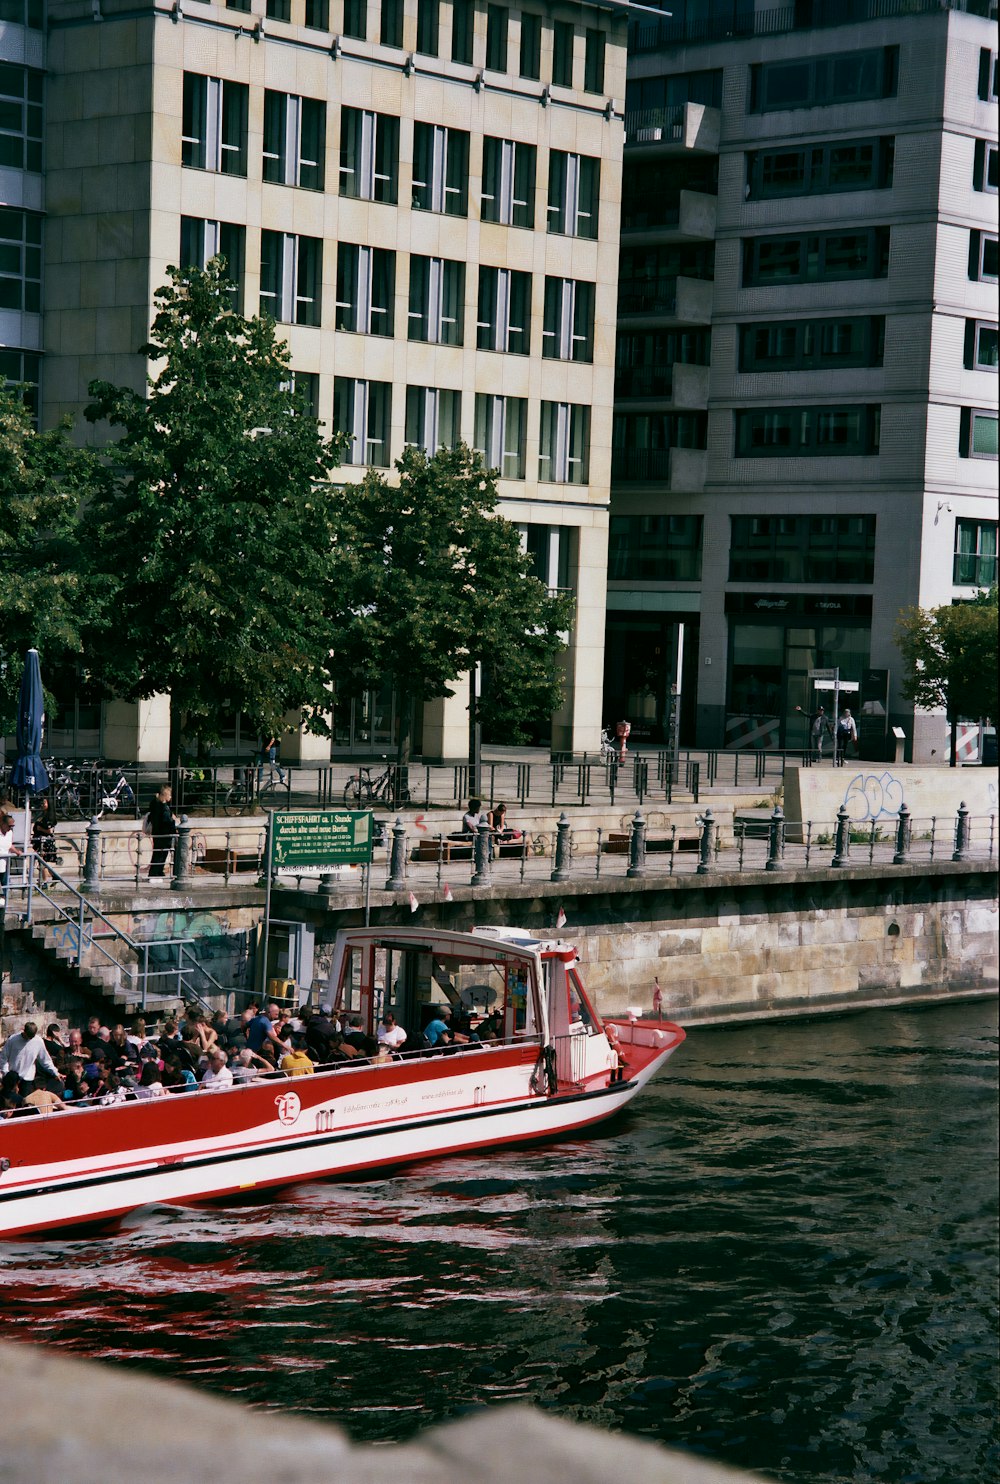 Persone che cavalcano la barca rossa e bianca sul fiume durante il giorno